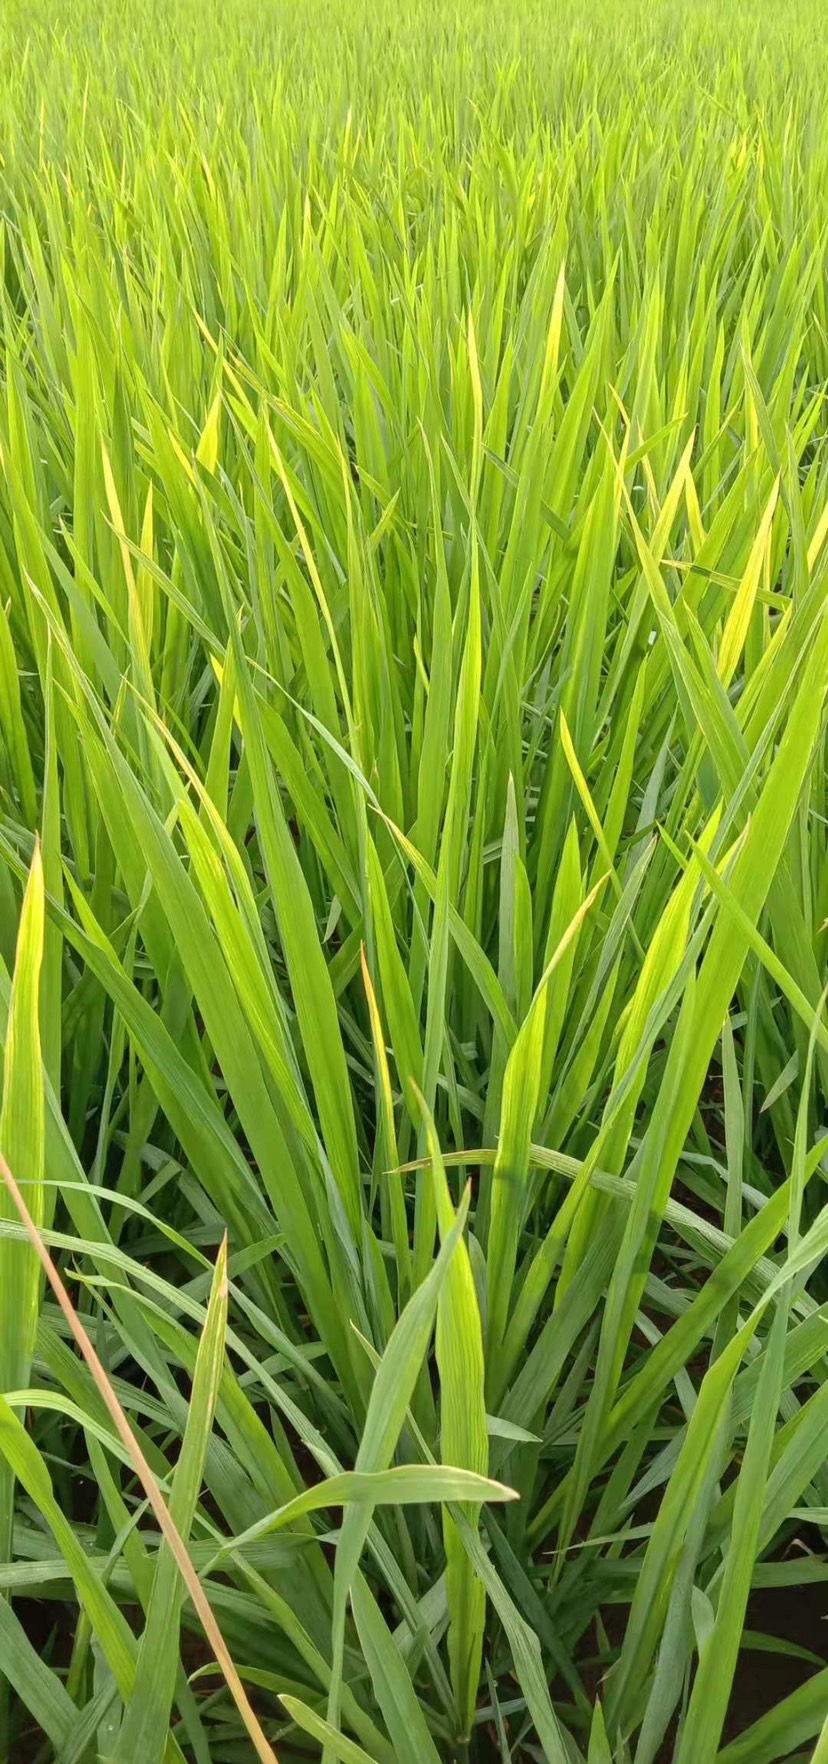 这几天水稻叶子梢发黄一天就黄了好多,专家能帮看下吗